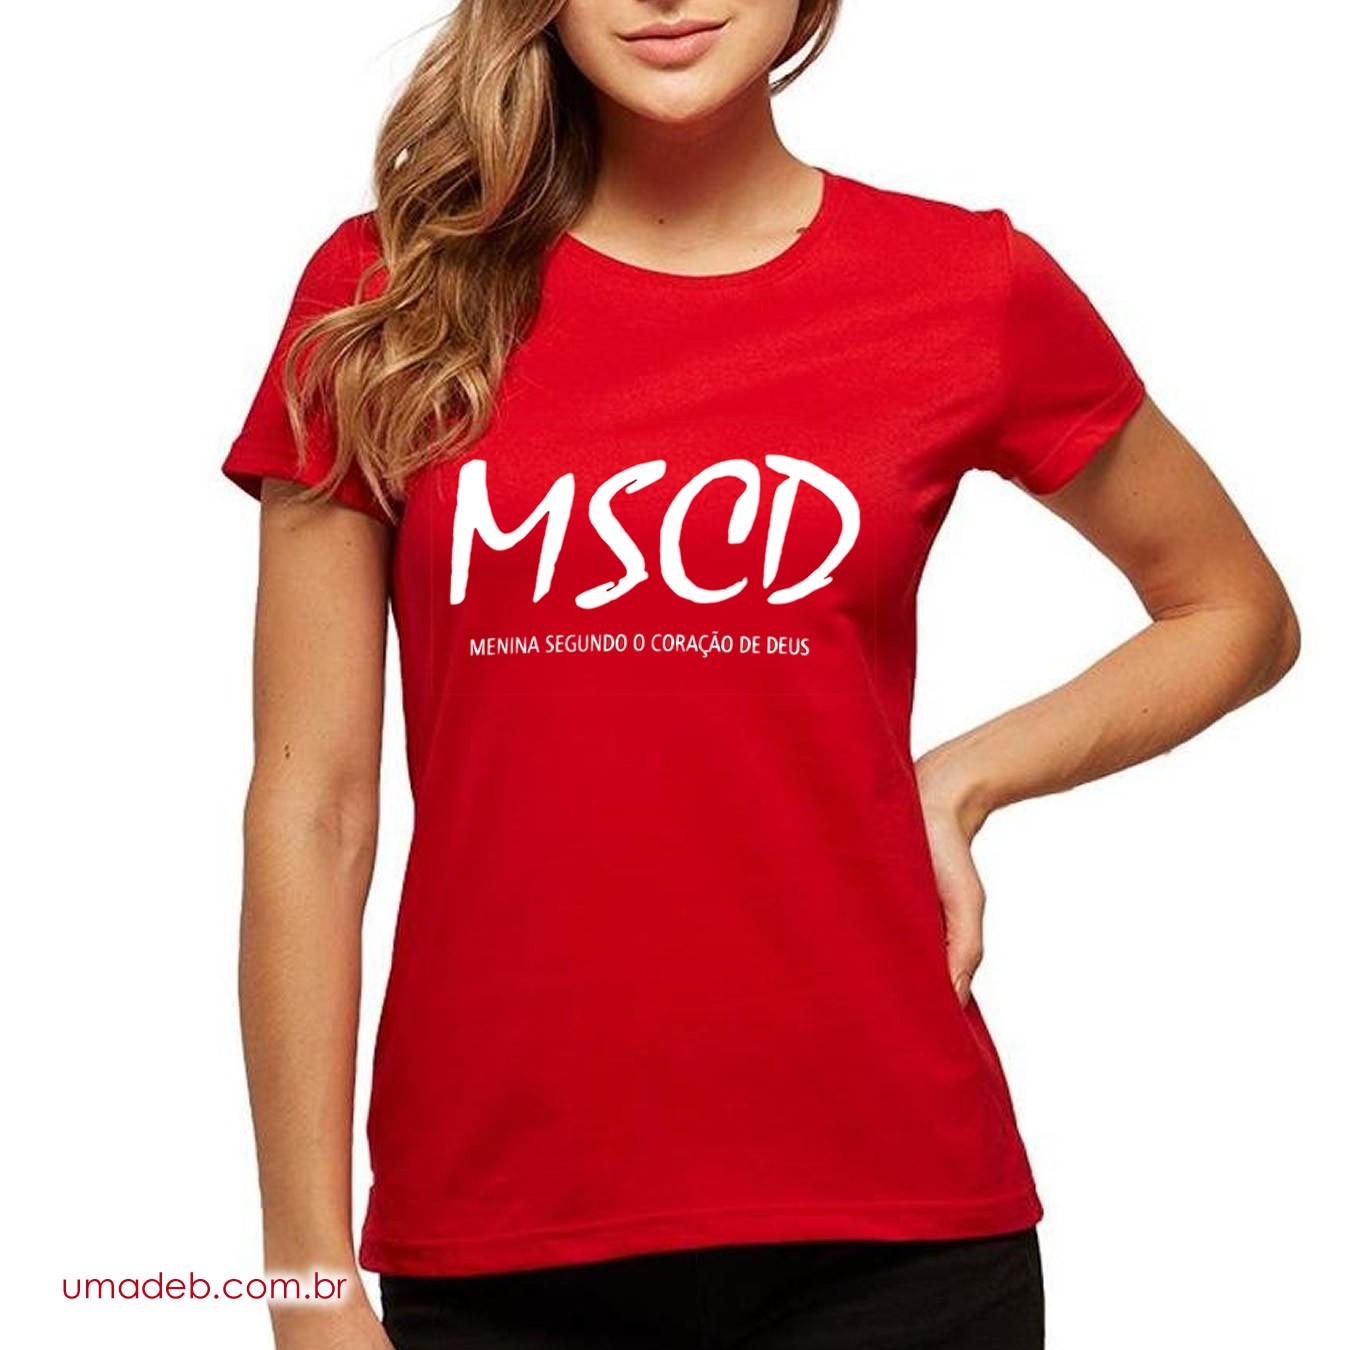 Camiseta MSCD - Sigla